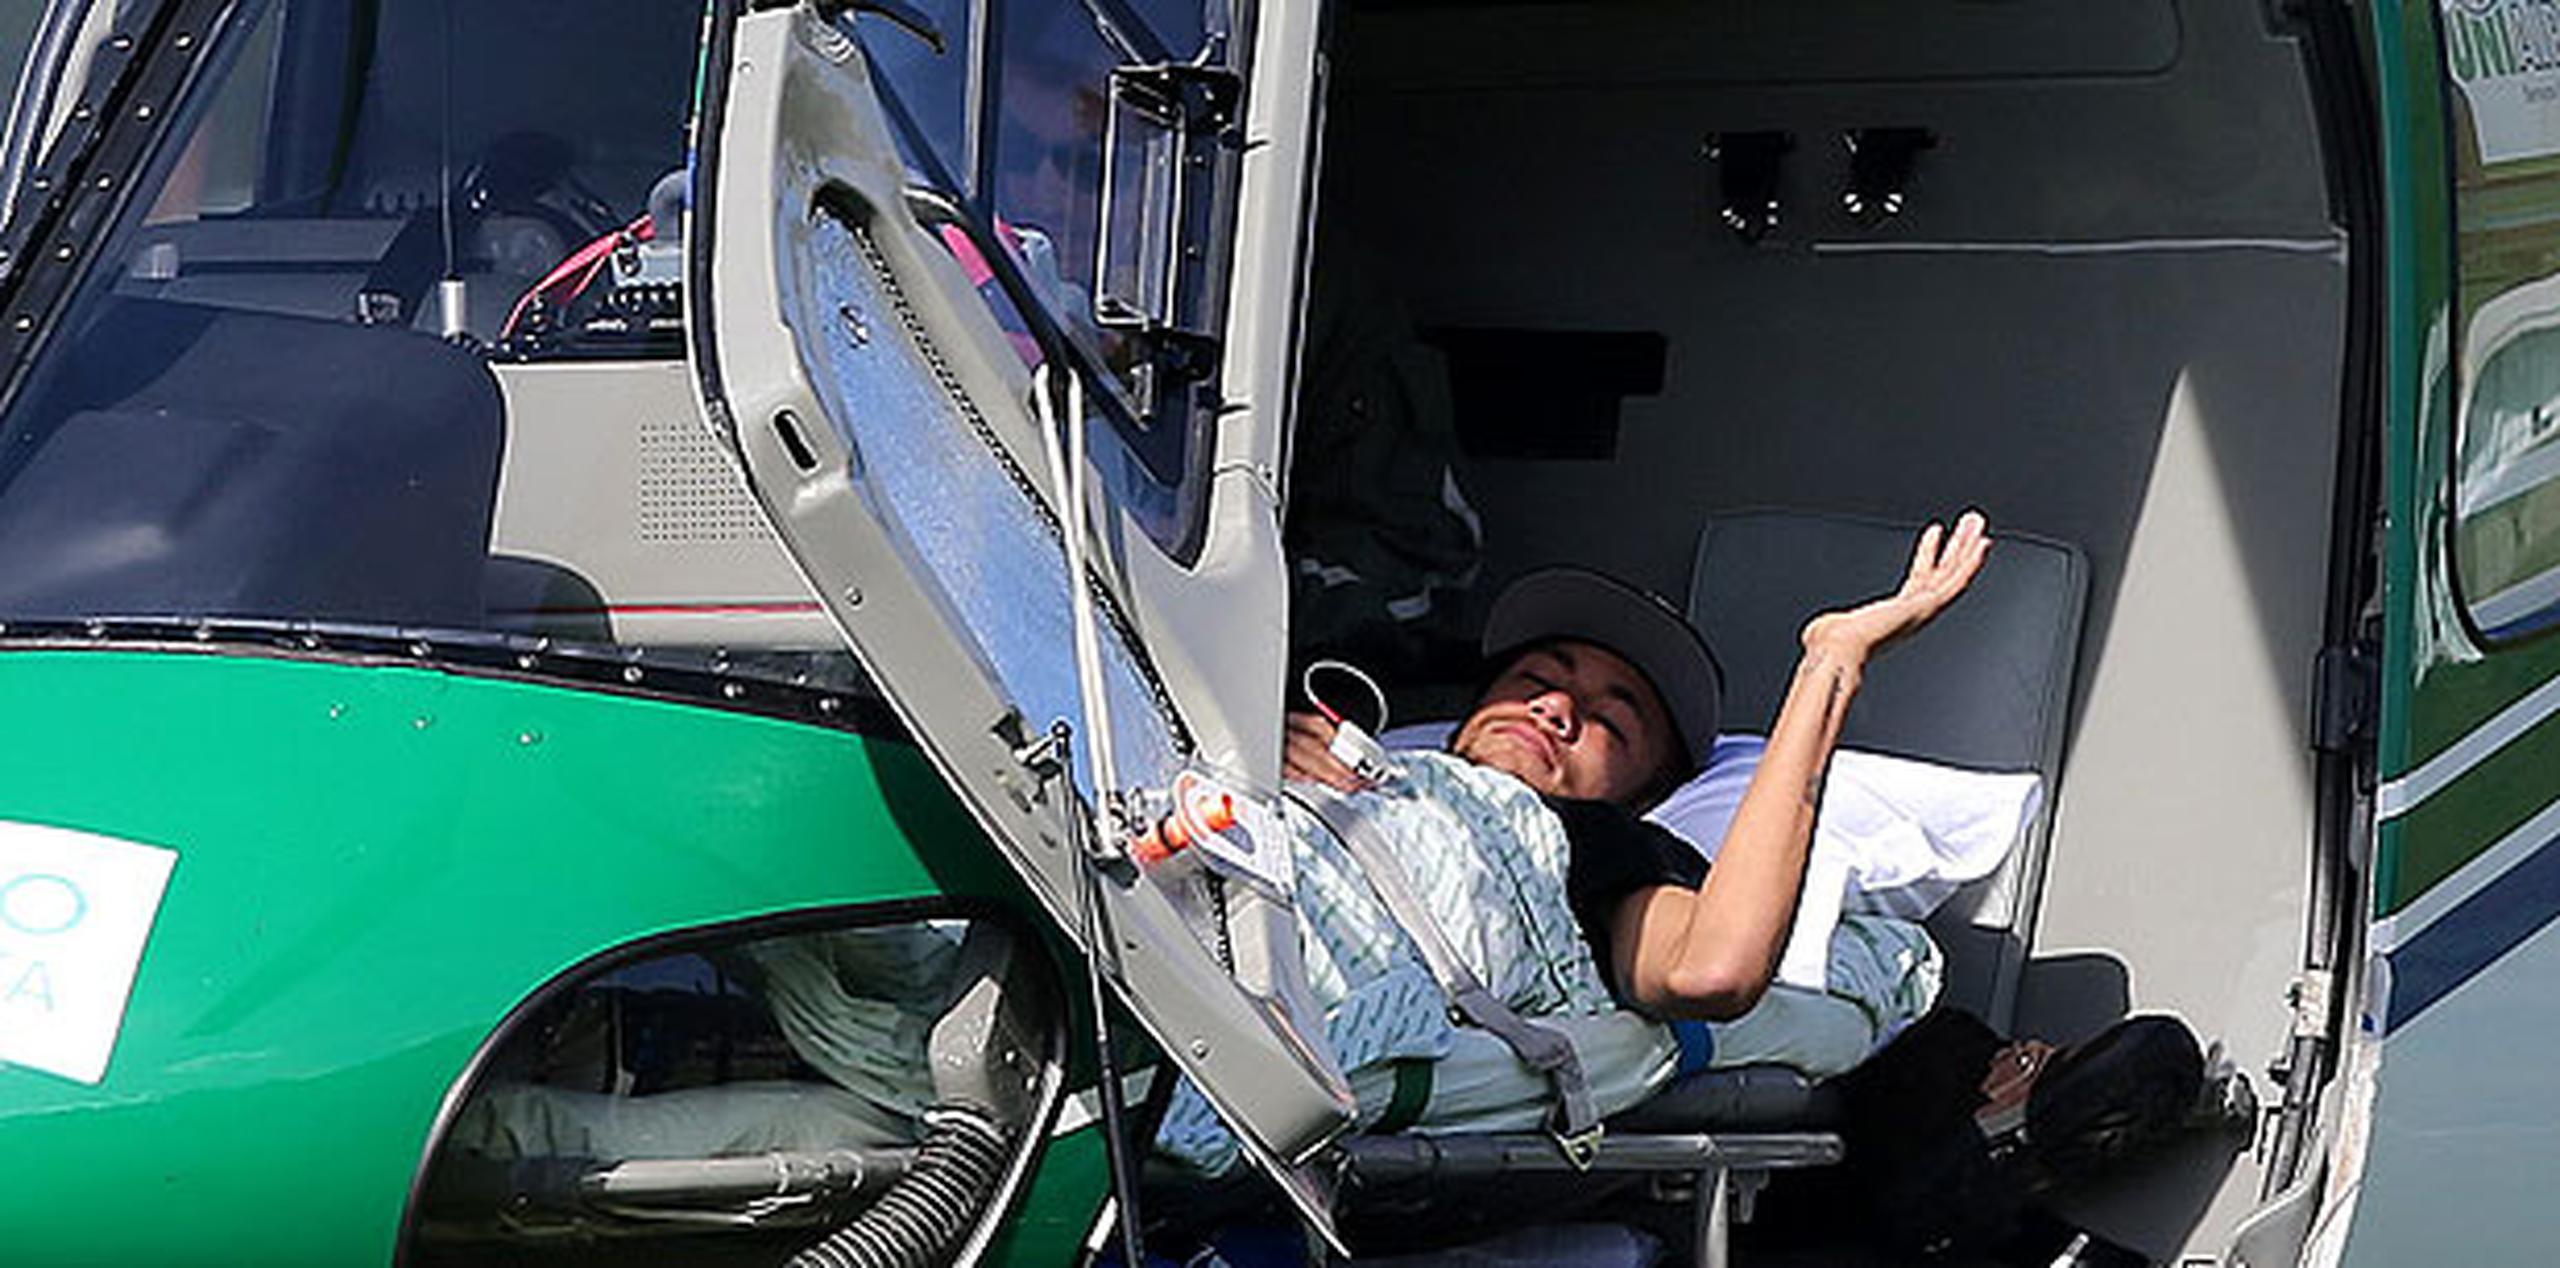 Los canales de información deportiva transmitieron en directo la imagen de Neymar, quien levantó una mayo para saludar desde la camilla en el helicóptero. (EFE)